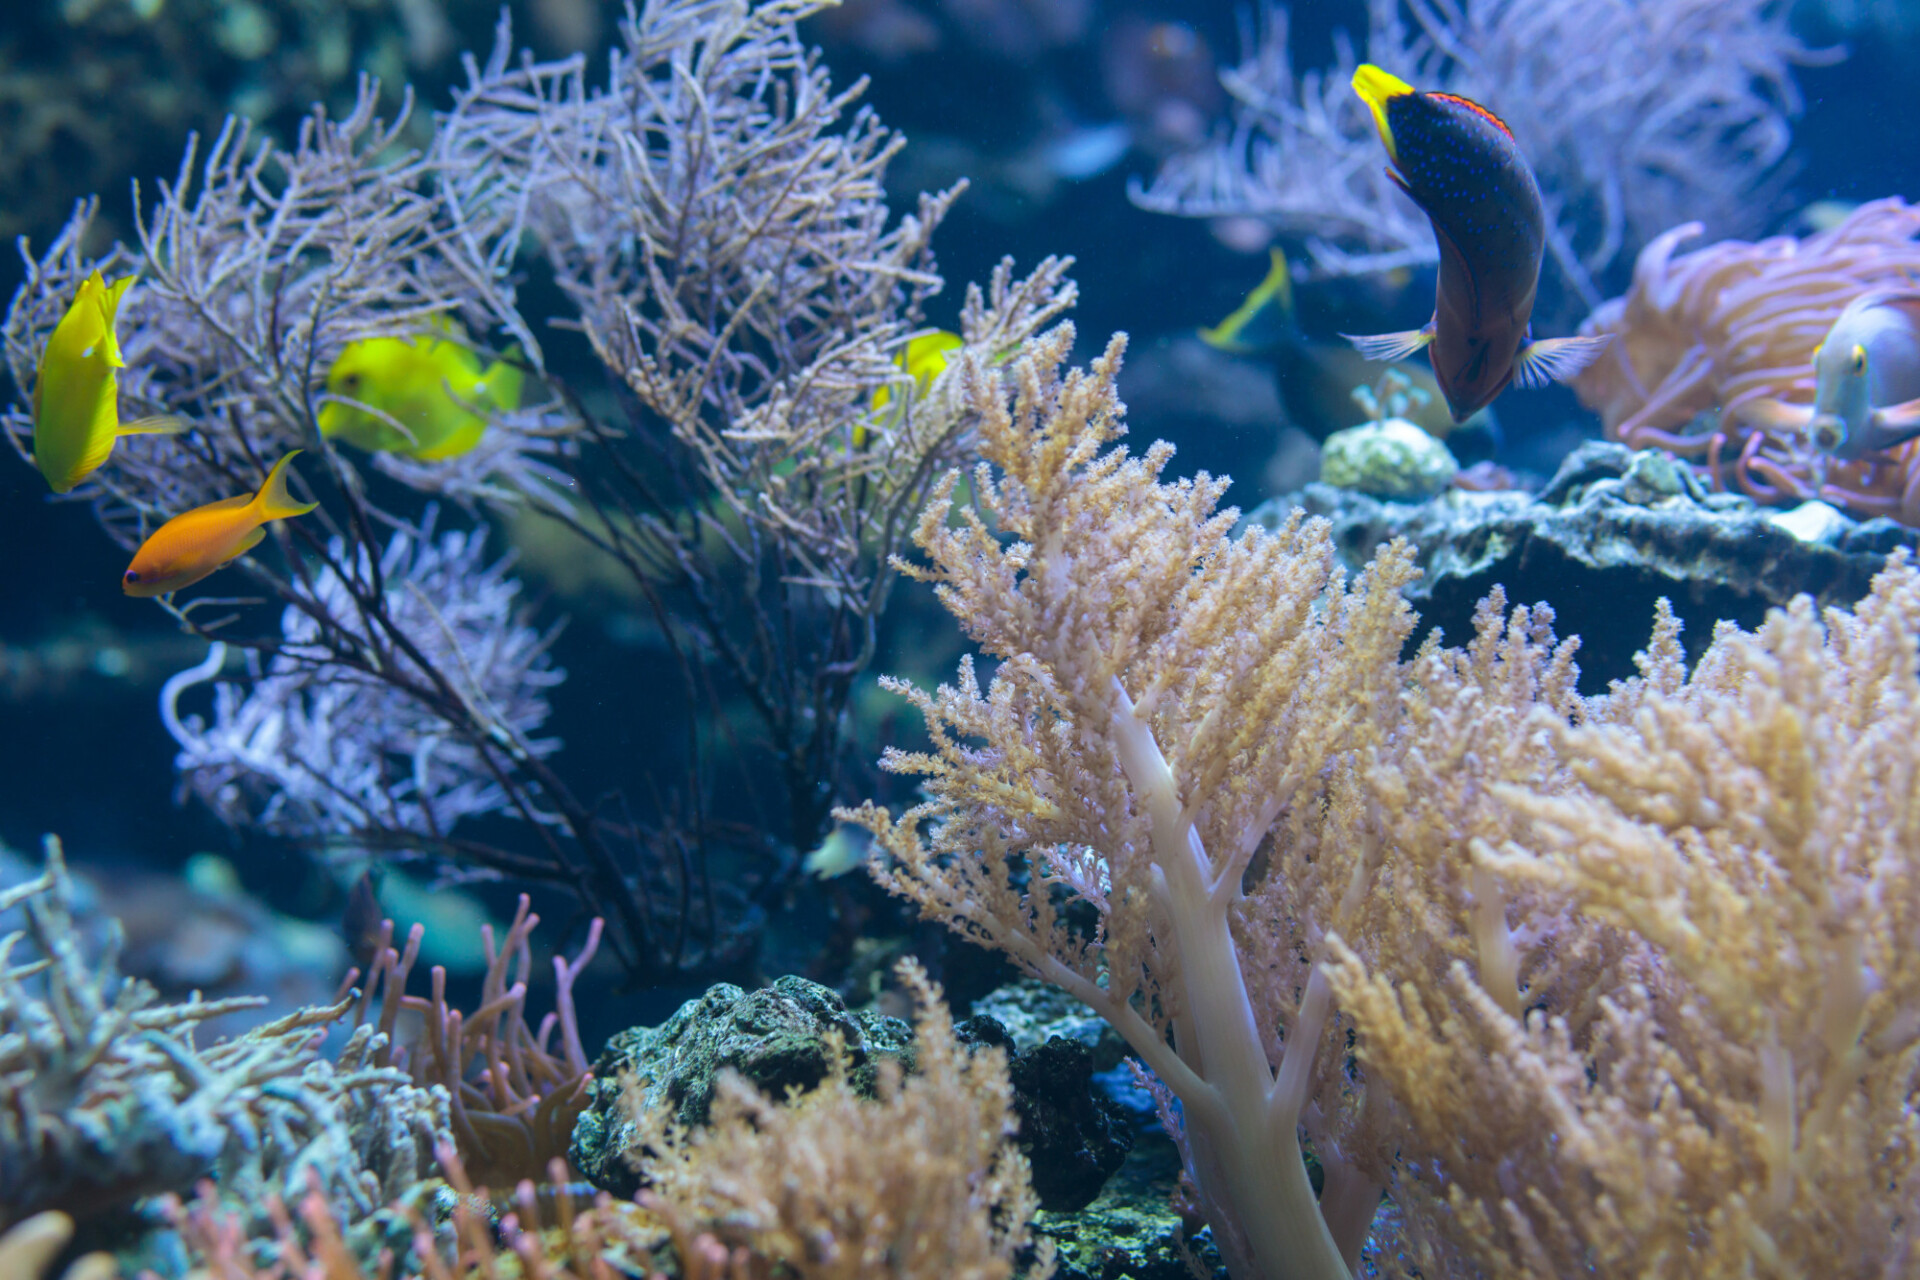 Saltwater aquarium with corals